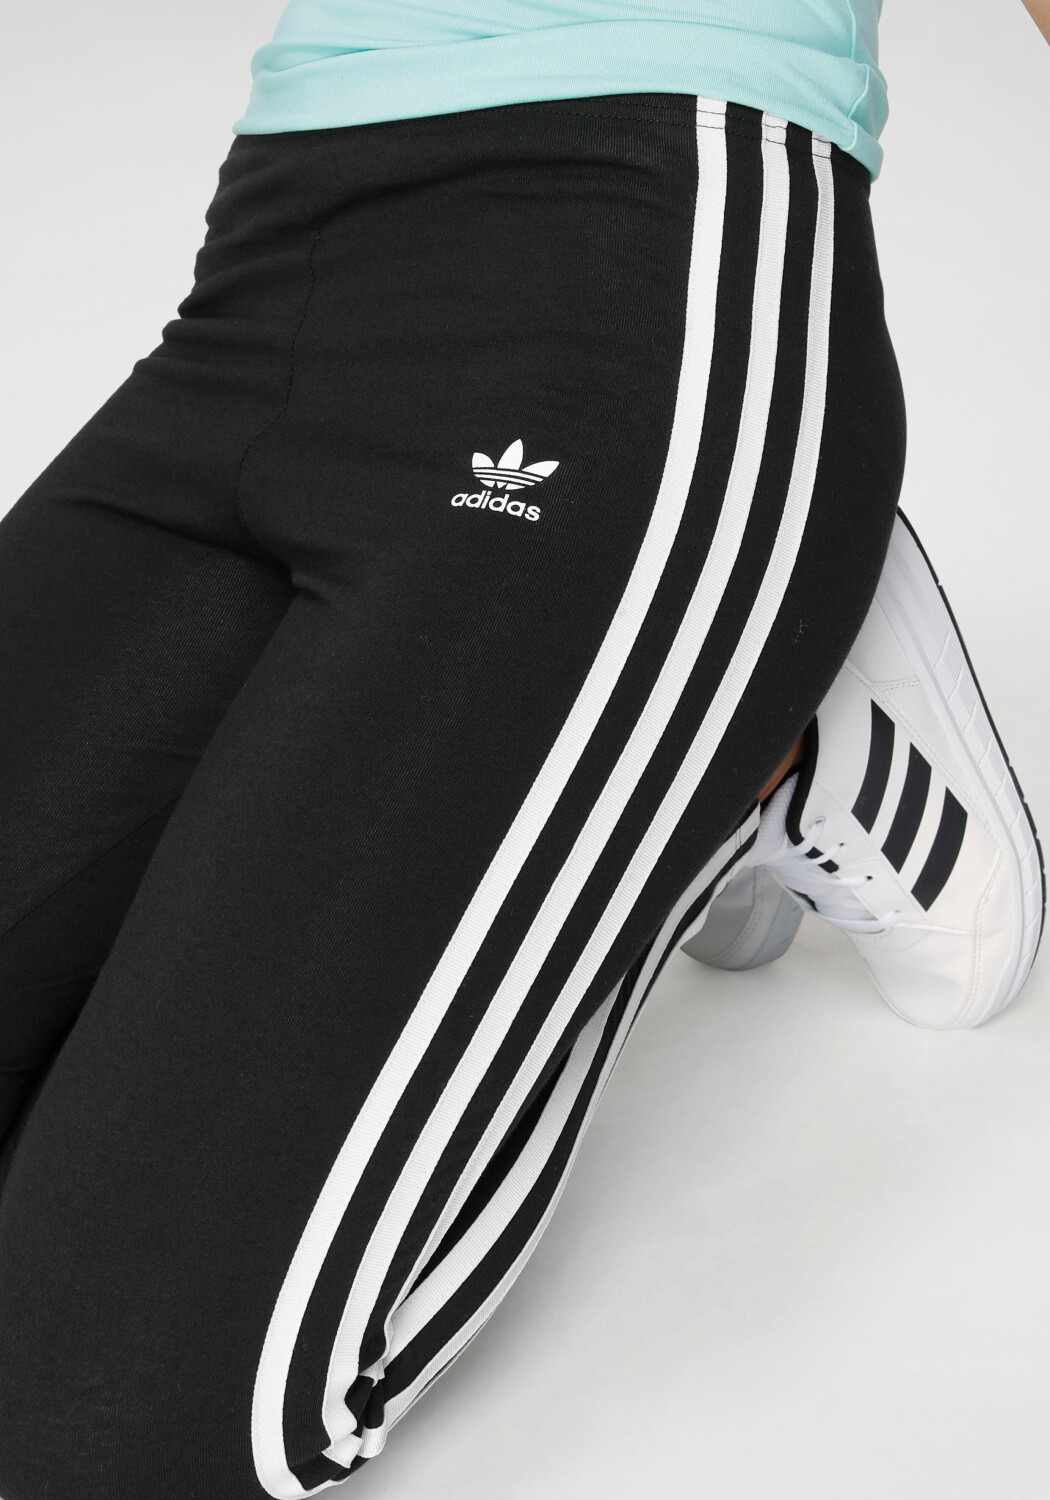 Grupo Lpoint® - Leggings Adidas 3-stripes Black/white Ed7820